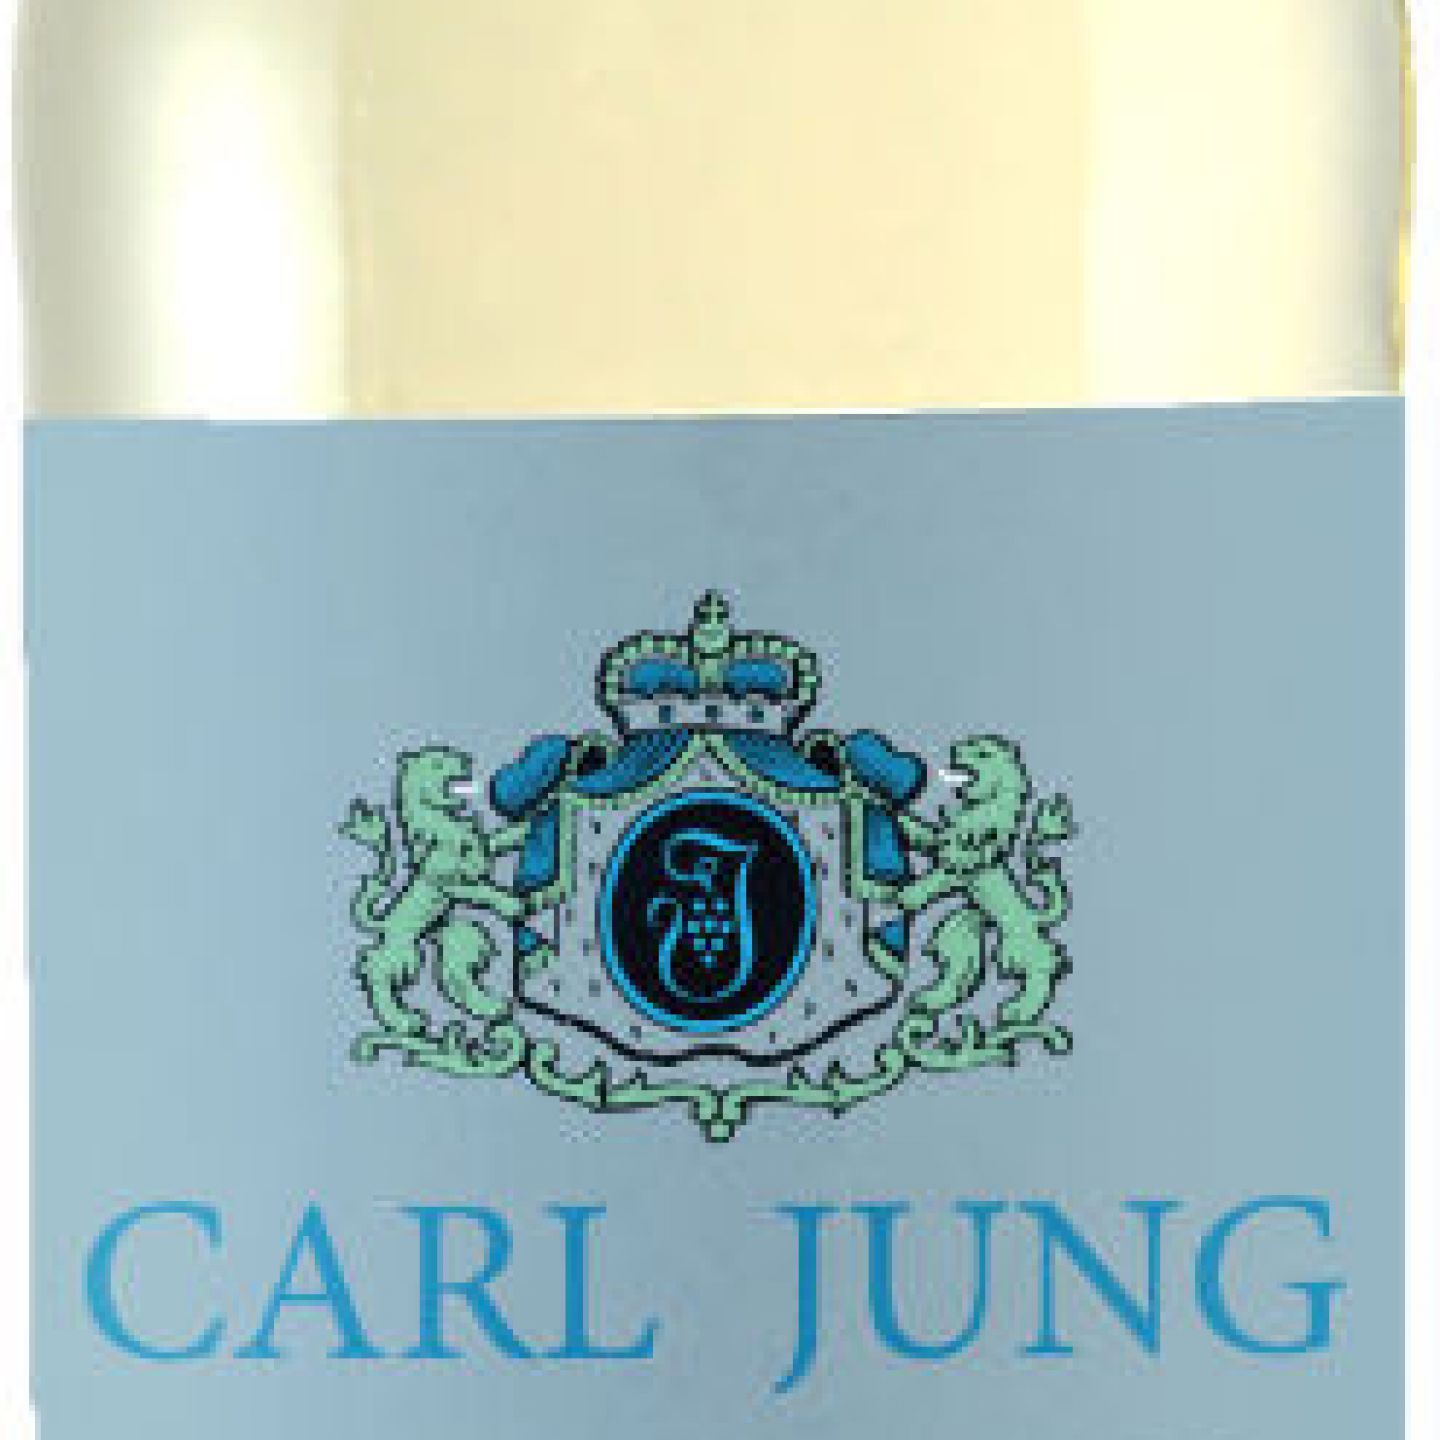 Carl Jung CHARDONNAY - Marke VEGAN Freiwein - Bauernladen eine Standort Vinumis KG Tulln der - alkoholfrei